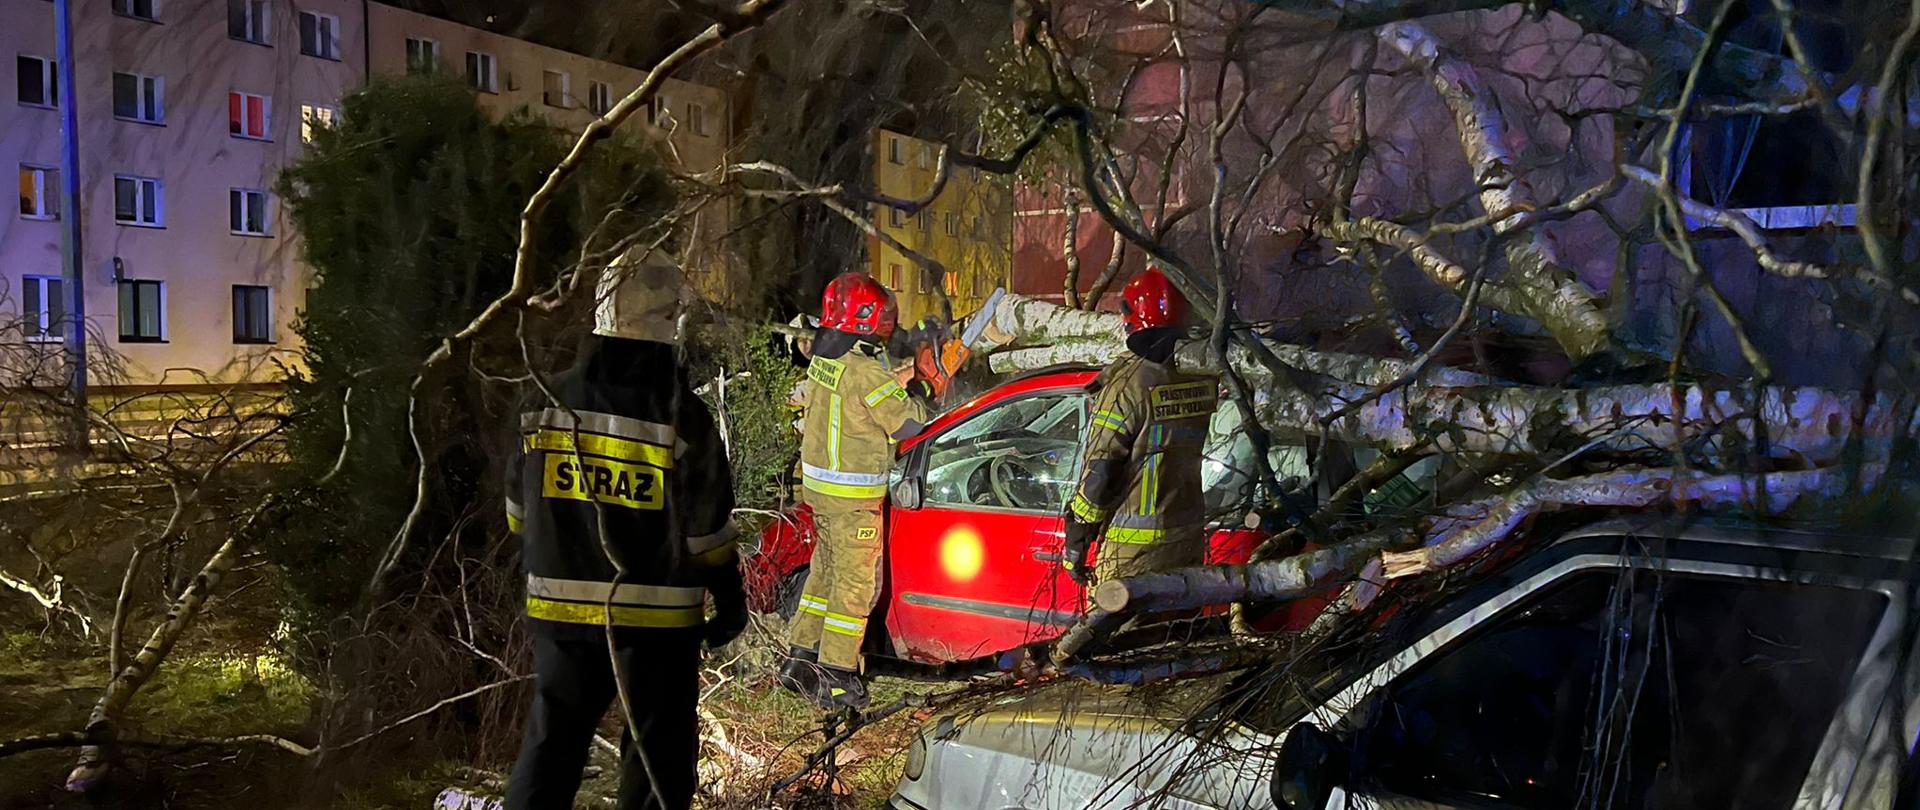 Zdjęcie przedstawia trzech strażaków, którzy w porze nocnej usuwają powalone drzewo na dwa samochody osobowe stojące na parkingu. W tle widoczne budynki mieszkalne wielorodzinne. 